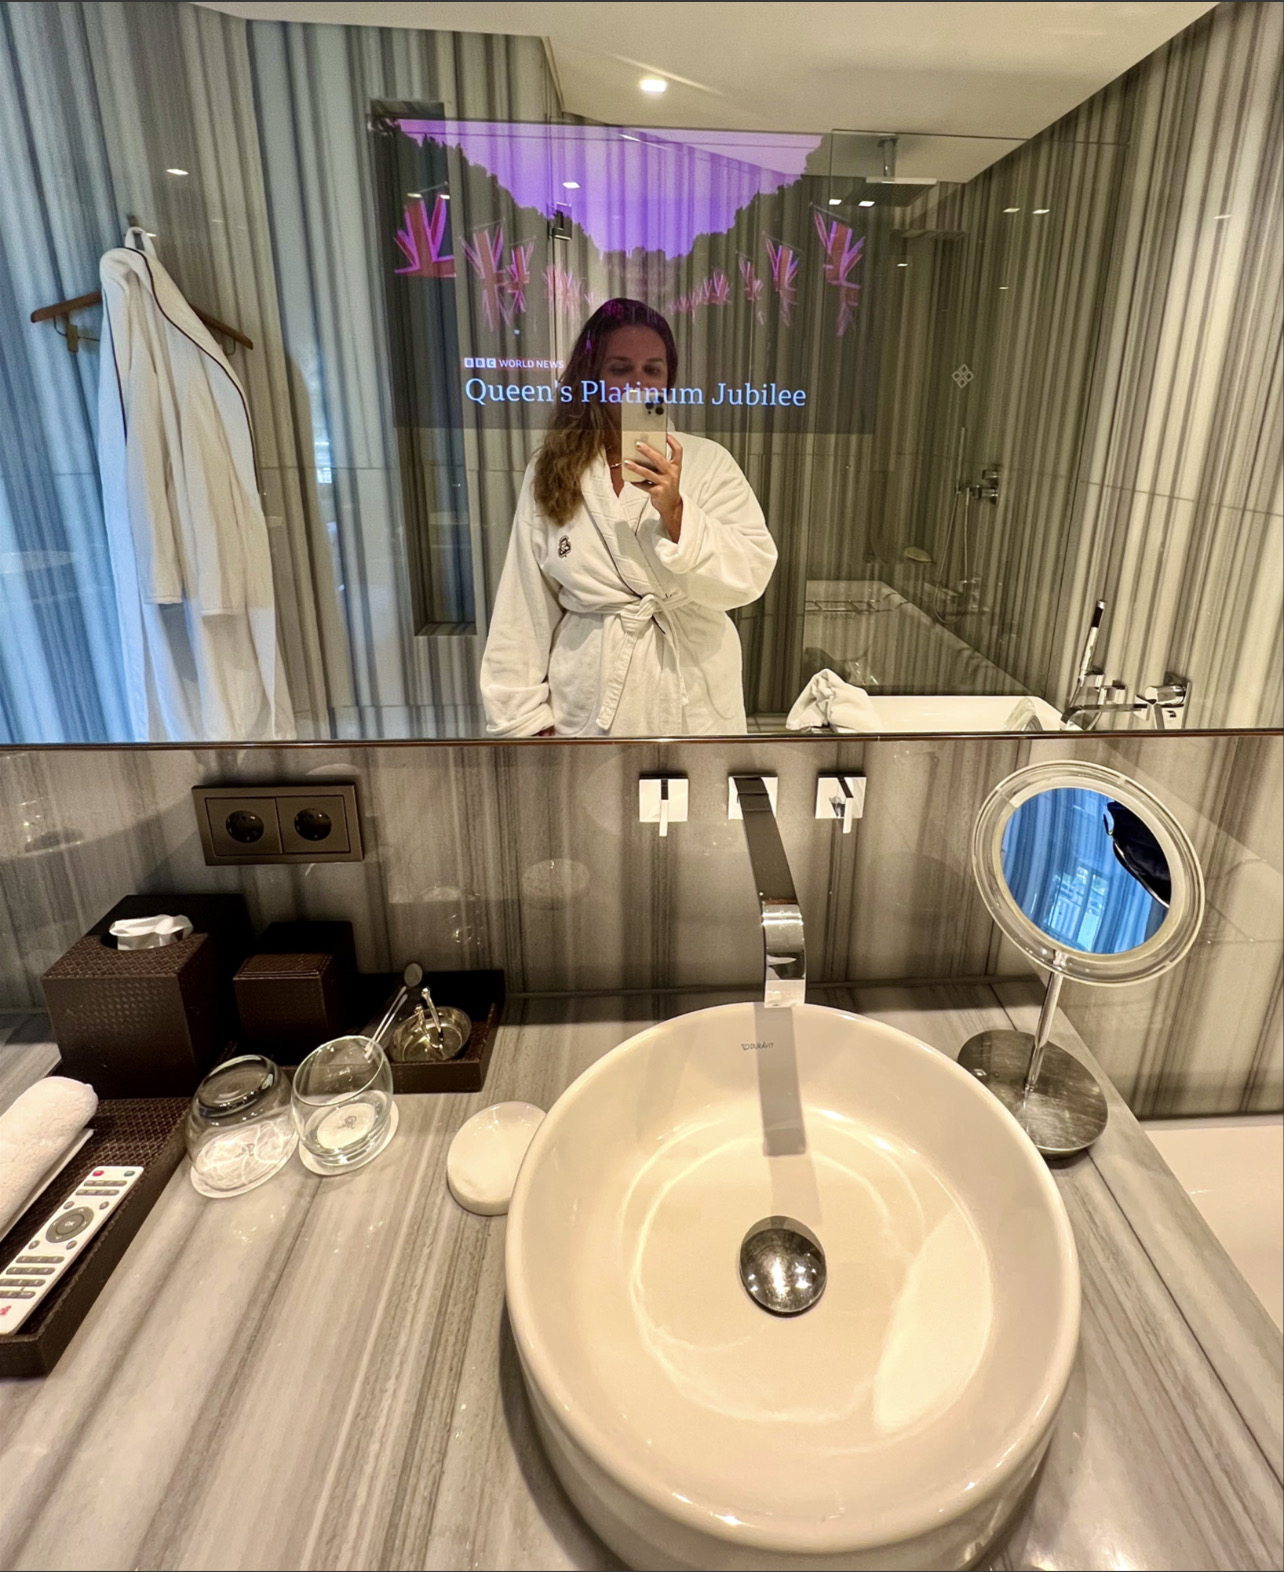 a woman taking a selfie in a bathroom